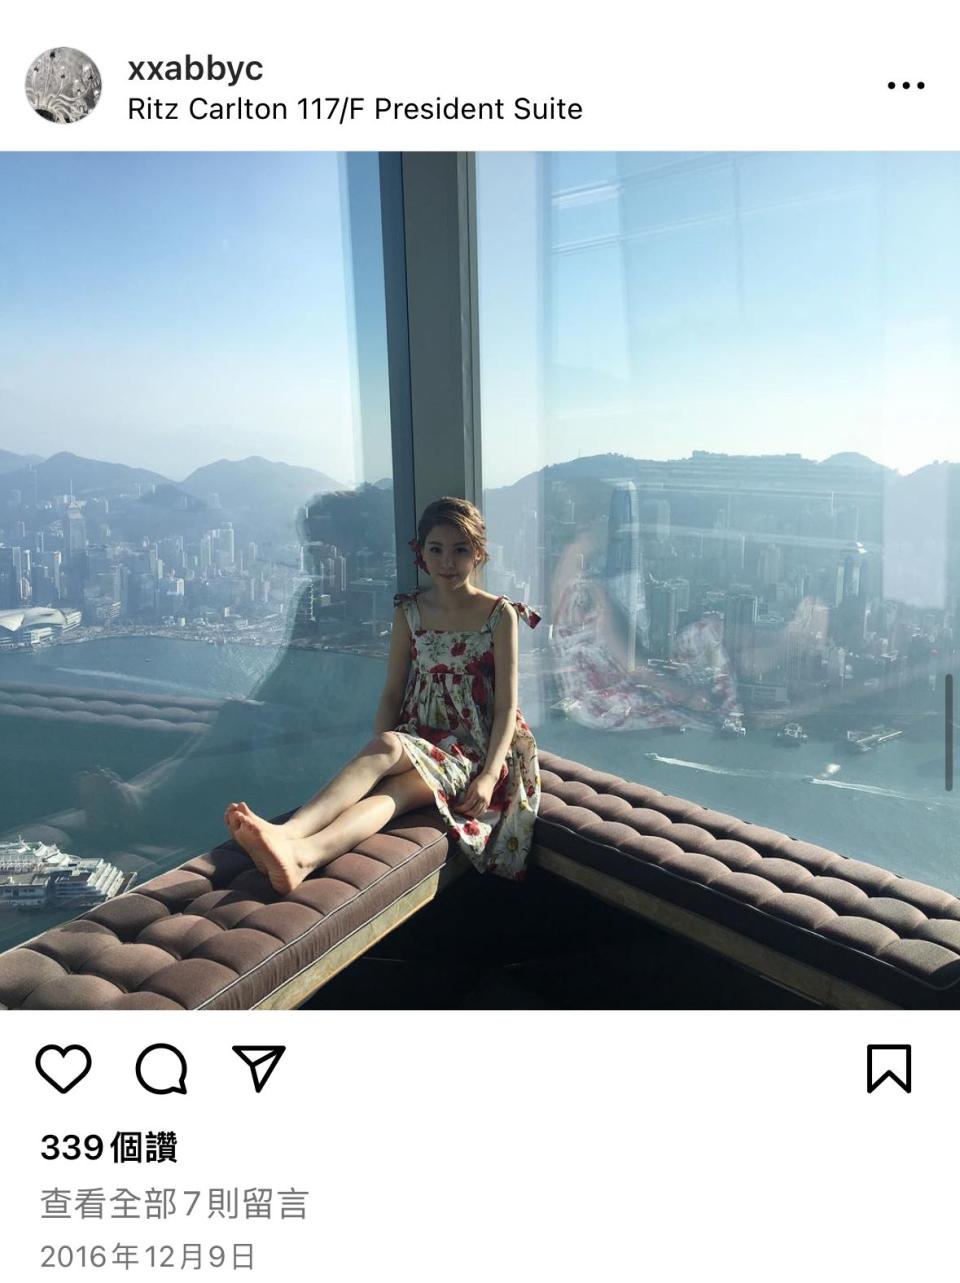 現時翻查蔡天鳳的 Instagram 帳戶，發現她在 2016 年 12 月 9 日，即跟譚仔「太子爺」Chris 結婚當日，上載了一張身處麗思卡爾頓酒店的照片。該相片亦是她在 Instagram 的首張露面照。